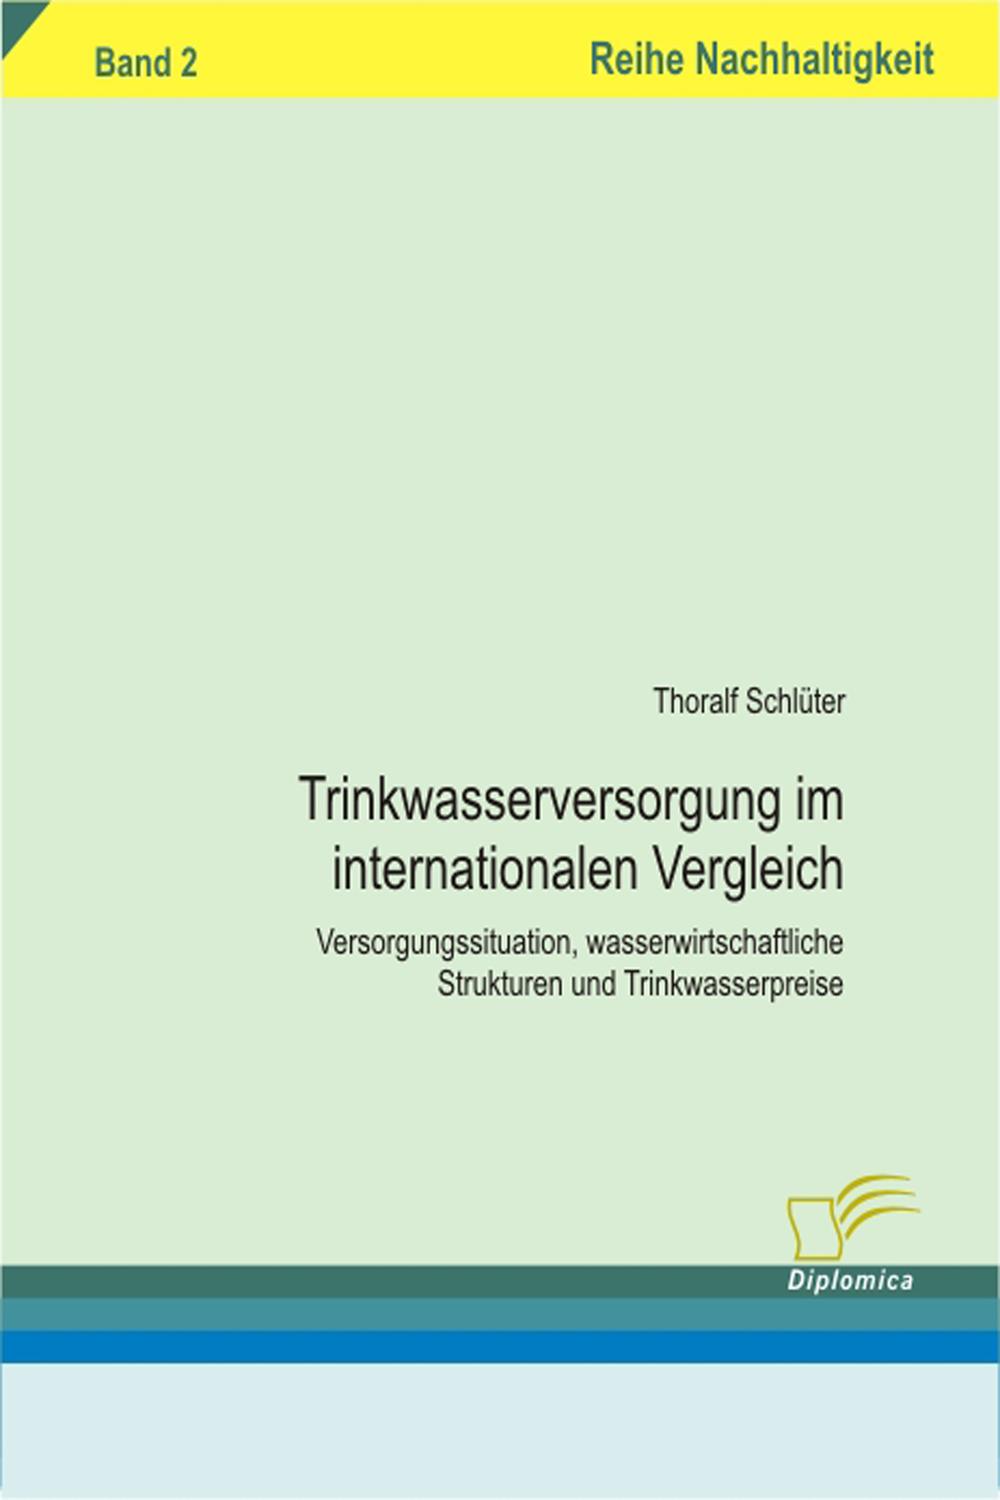 Trinkwasserversorgung im internationalen Vergleich - Thoralf Schlüter